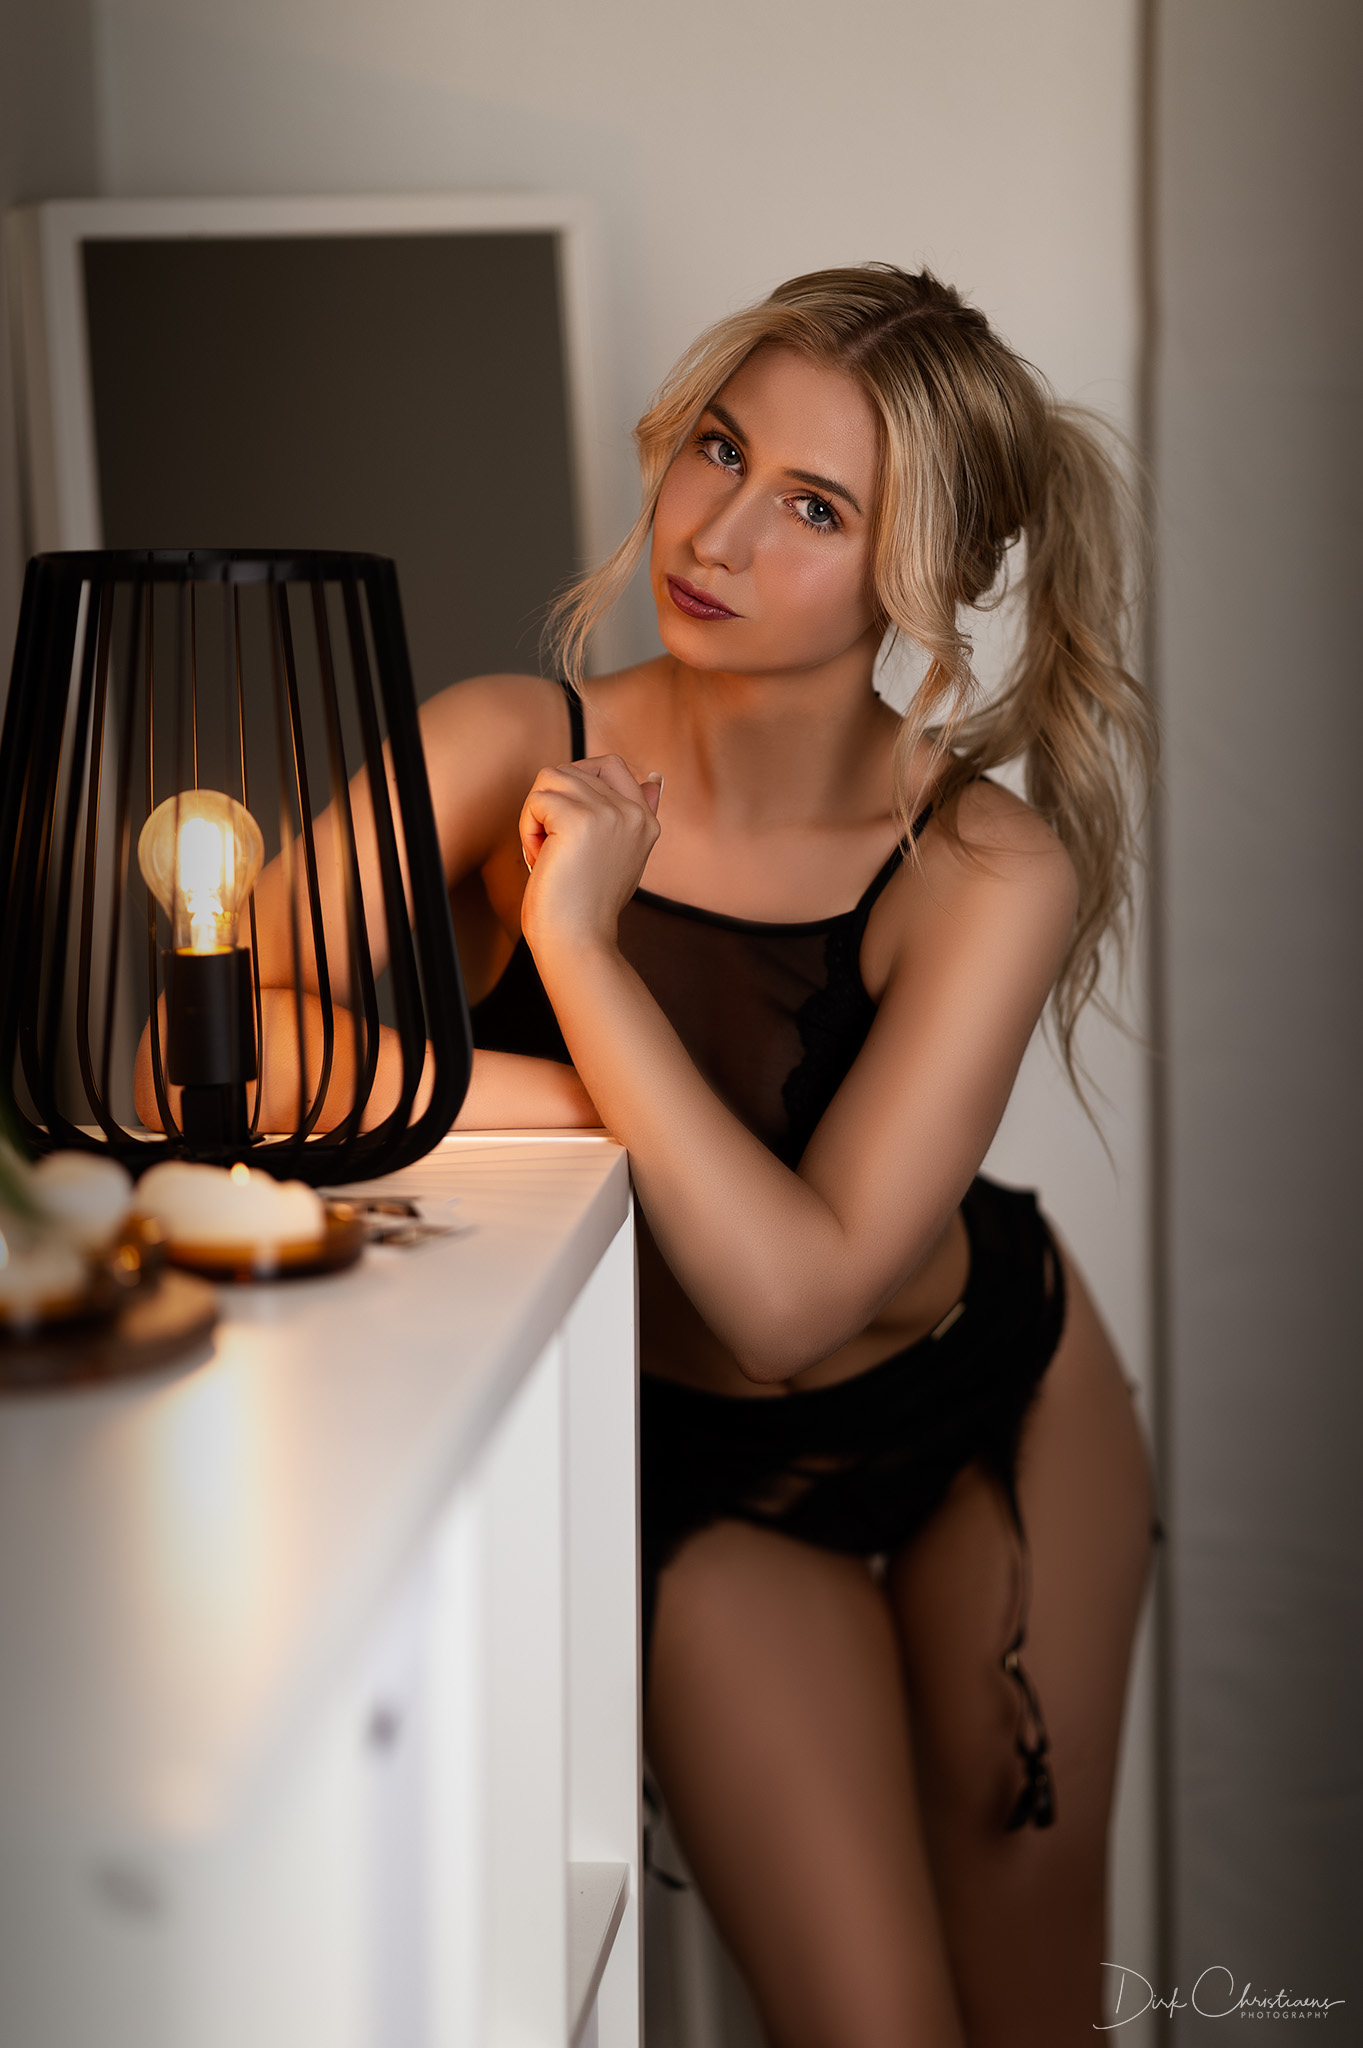 Lenka Van Inthoudt, model from Belgium at a boudoir photoshoot